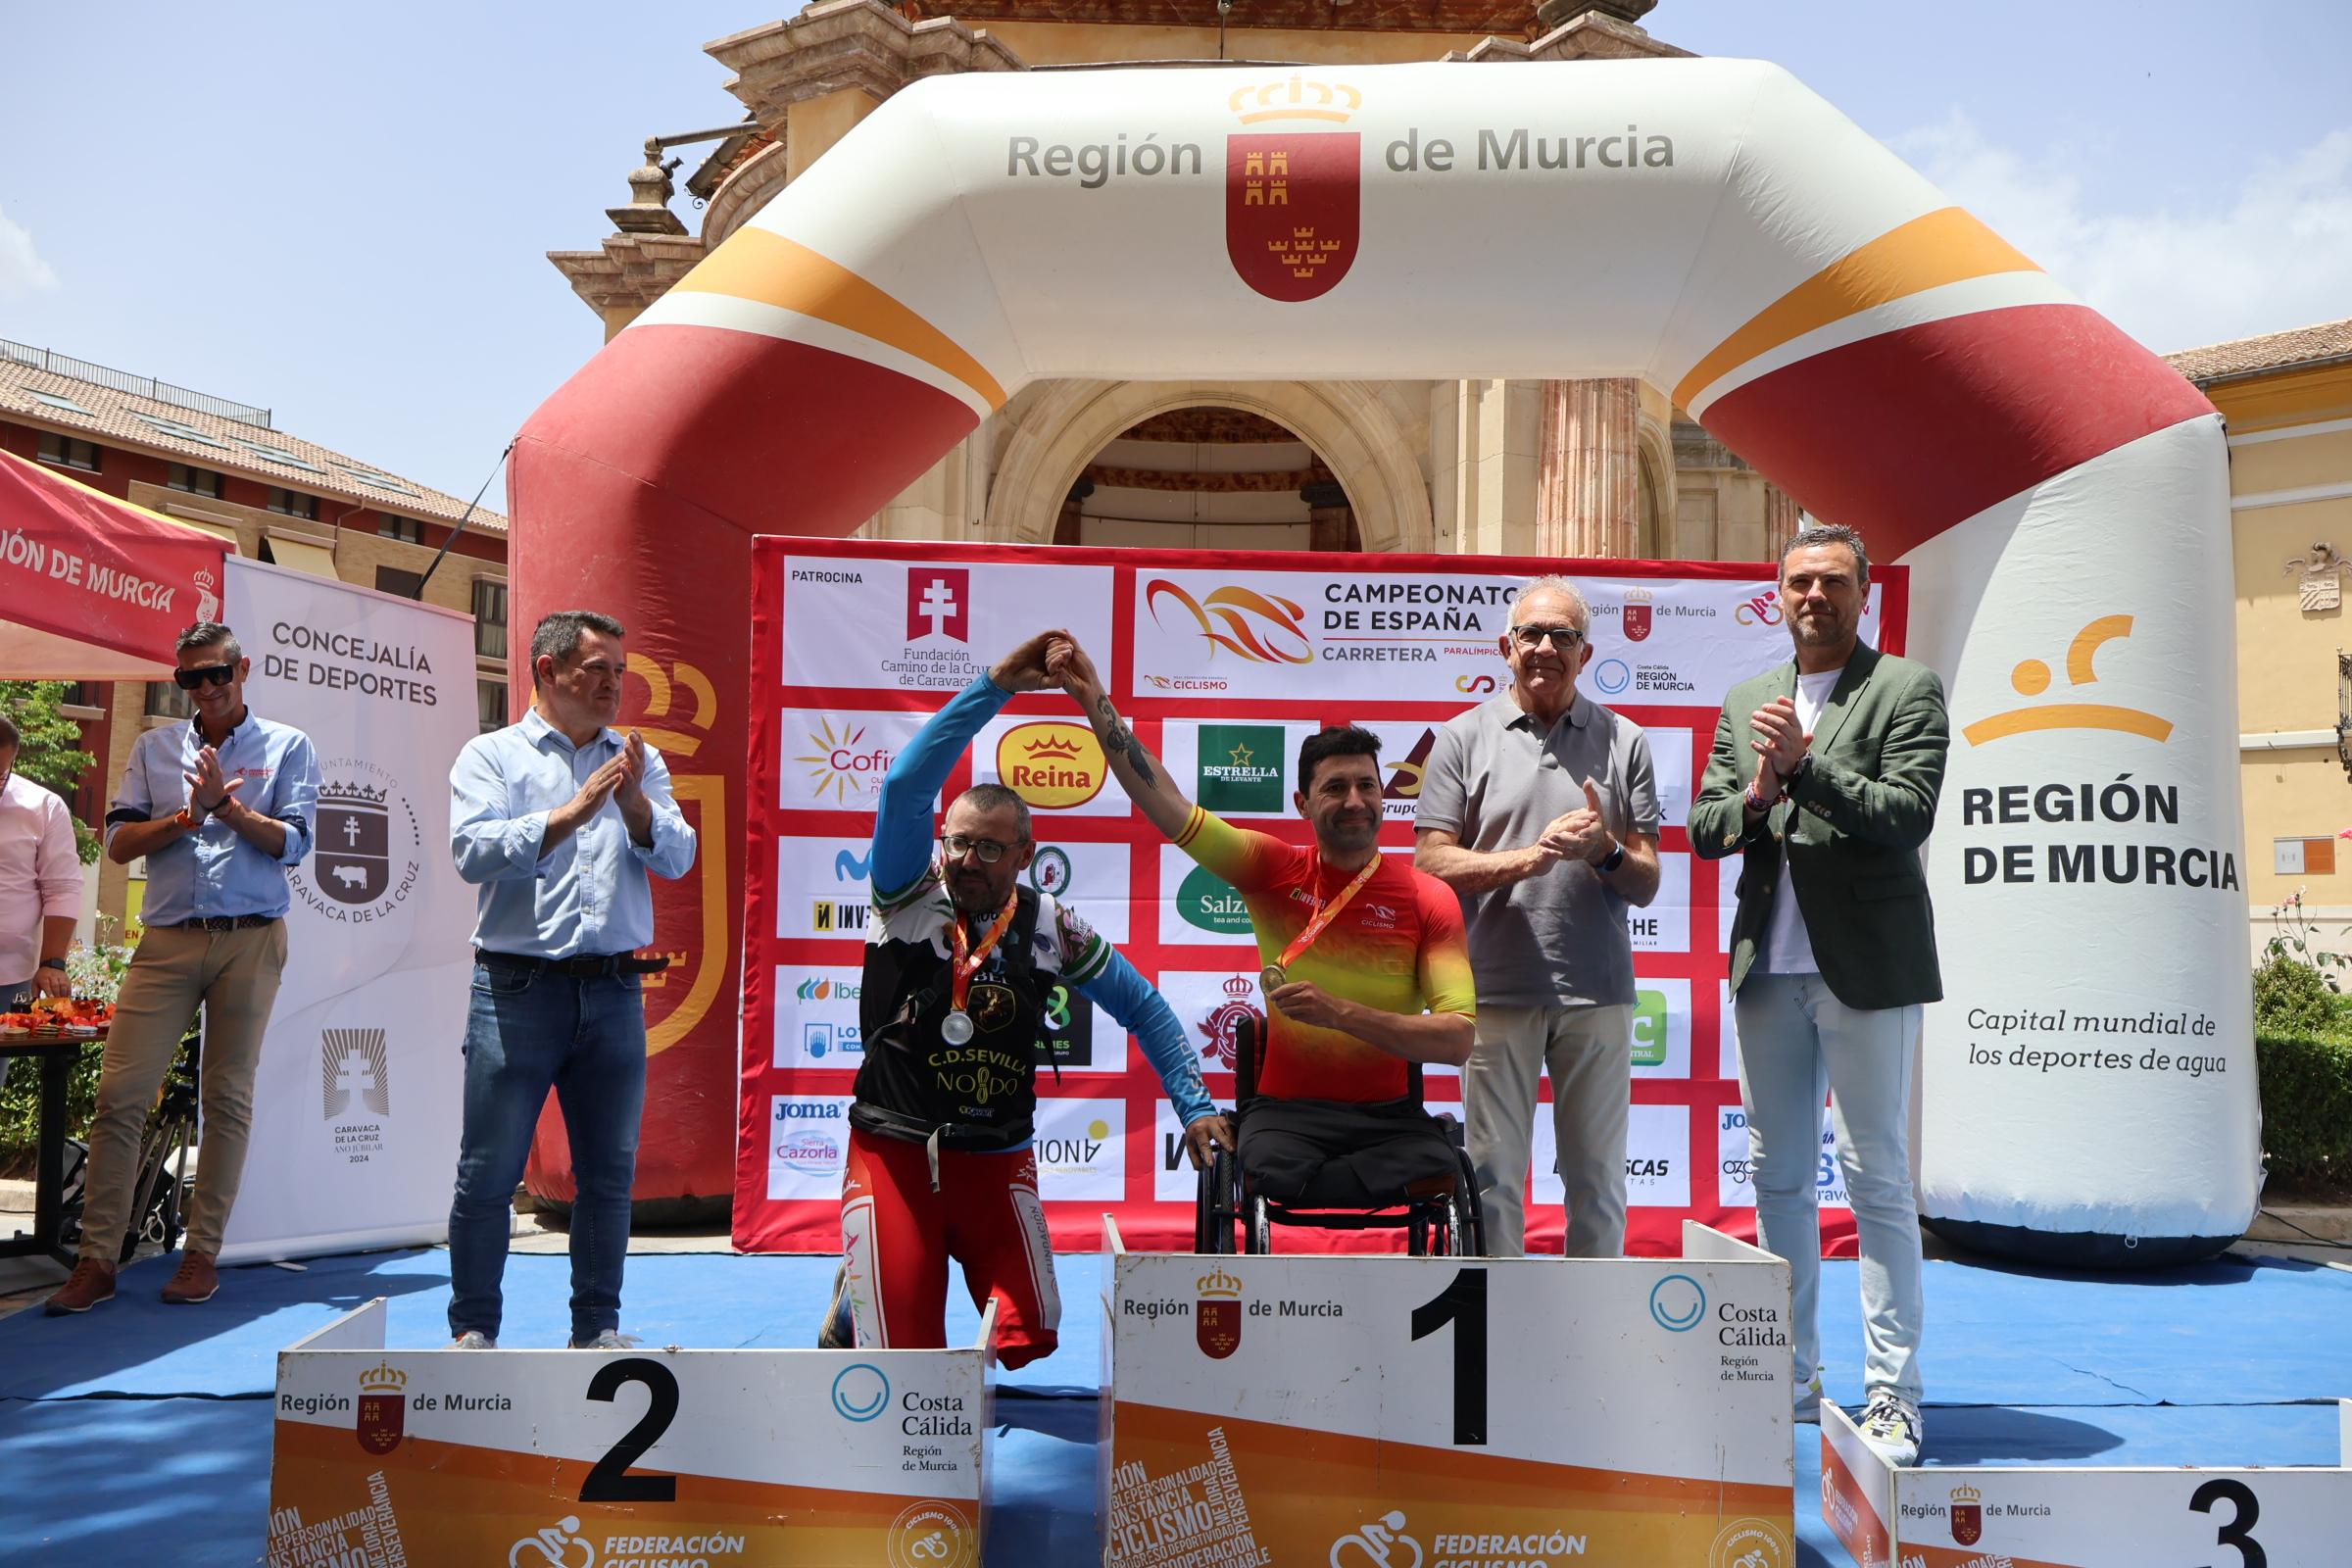 Caravaca de la Cruz cierra con éxito un brillante Campeonato de España de Ciclismo Paralímpico en carretera